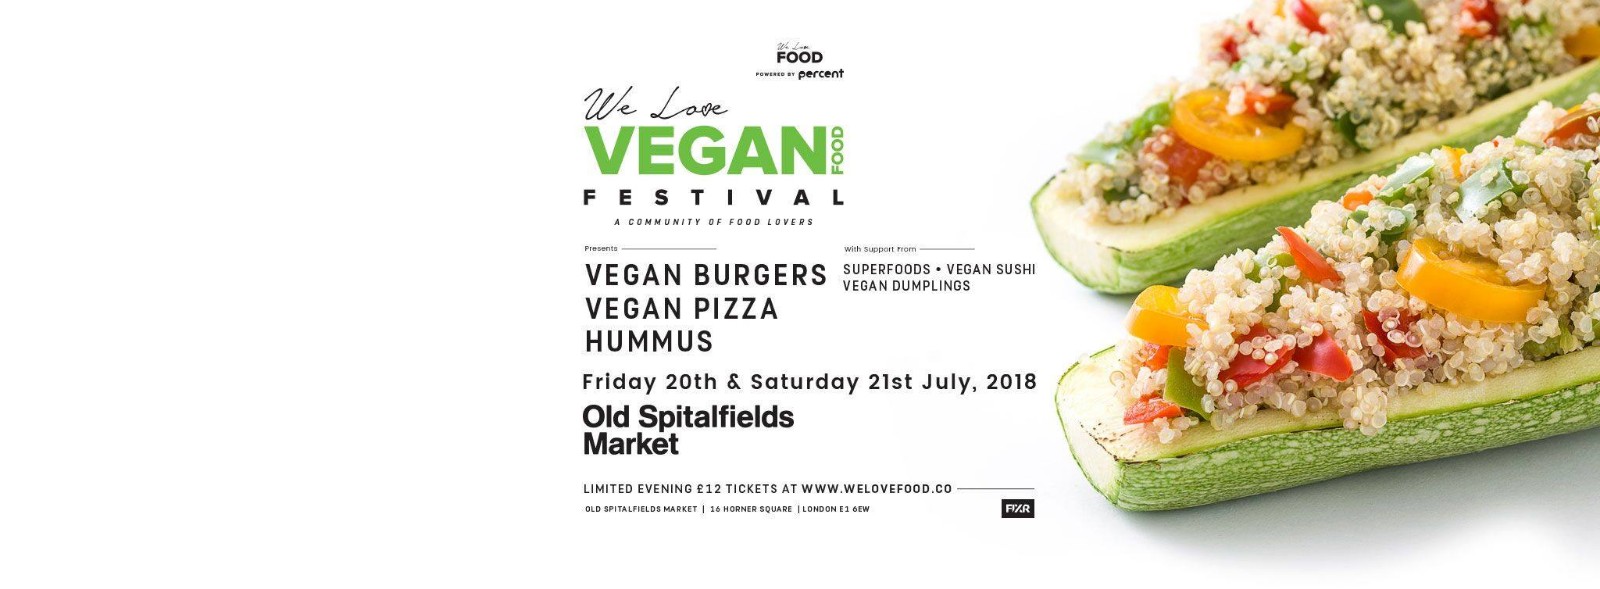 伦敦最大素食节--London's Biggest Vegan Festival